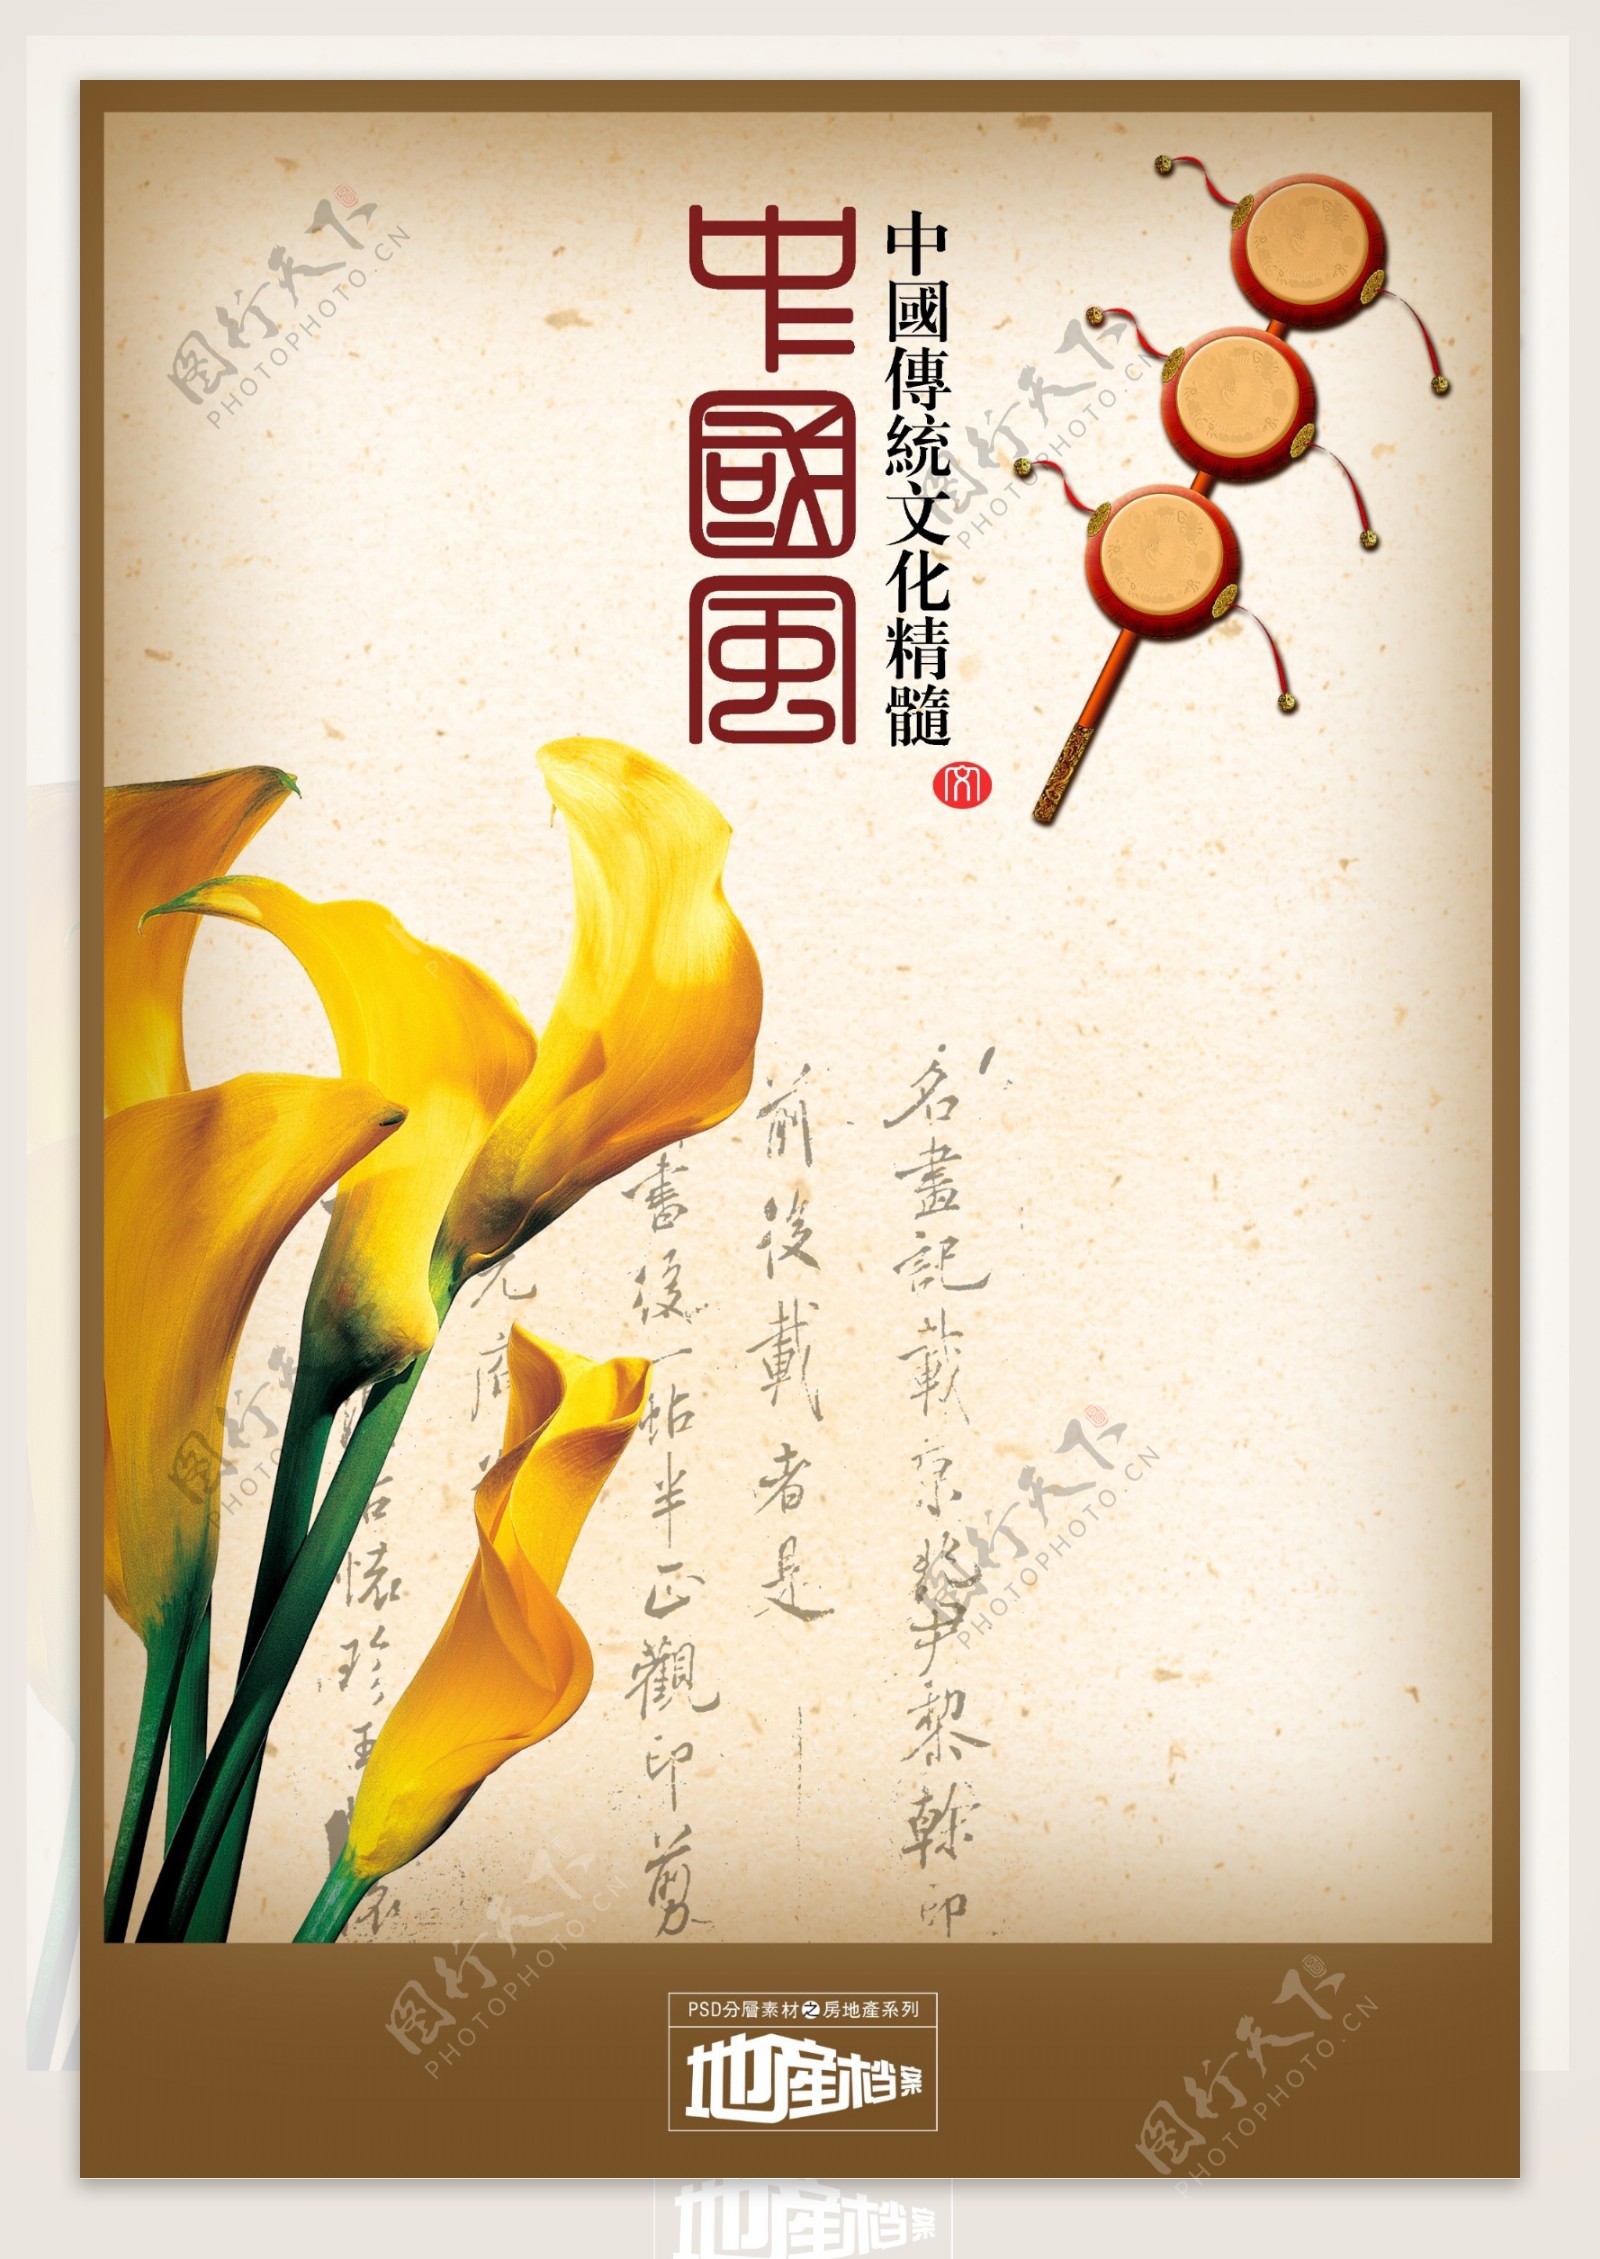 地产档案房地产psd源文件中国风拨浪鼓鼓中国传统花卉花朵